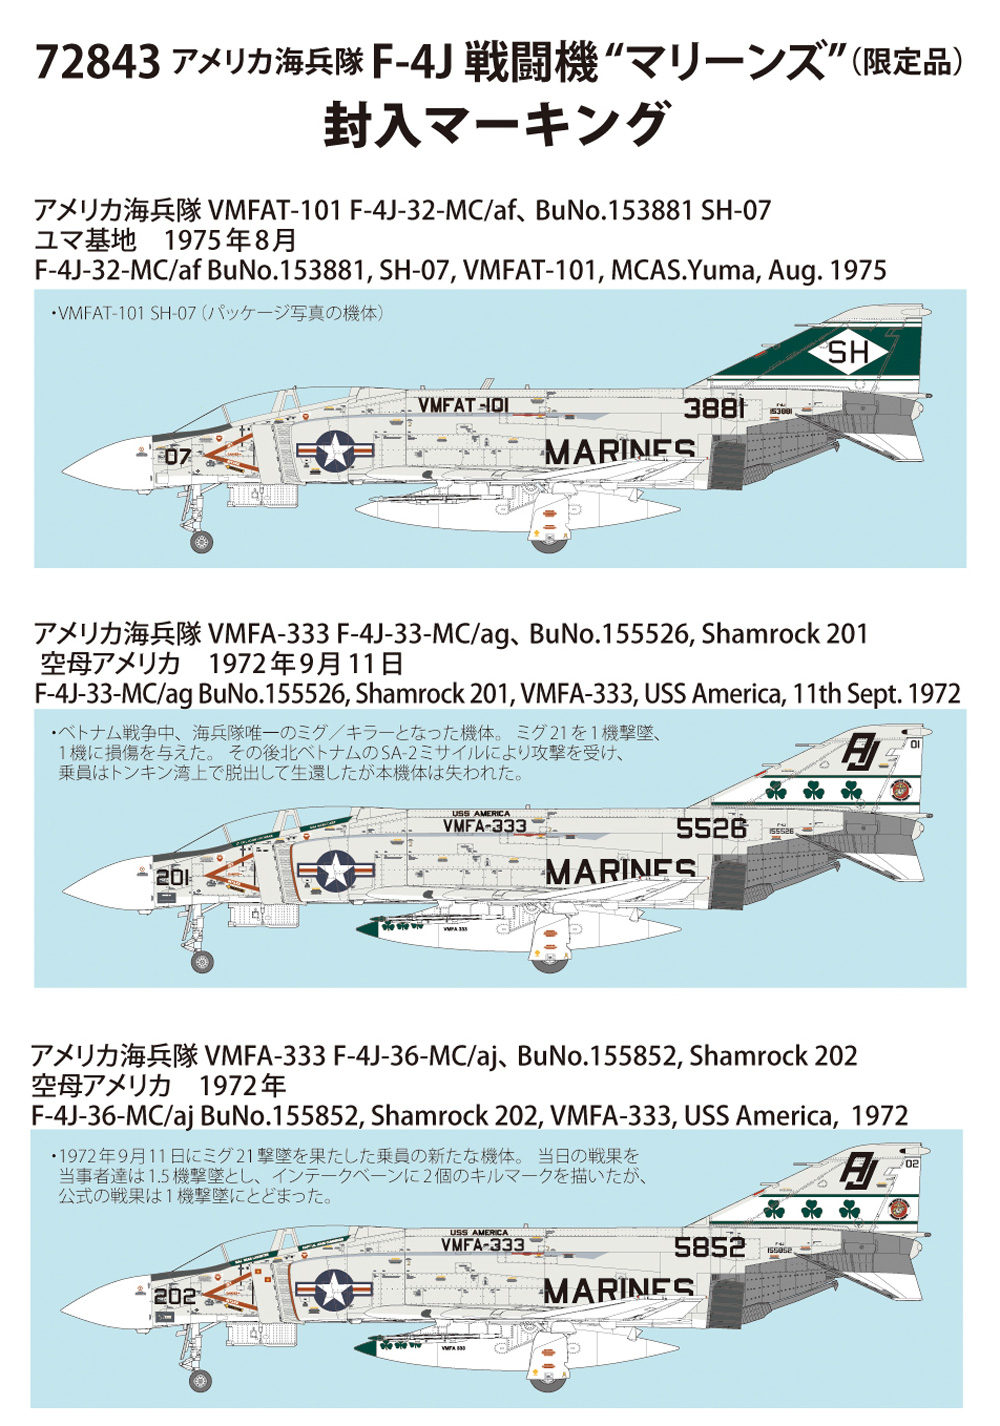 アメリカ海兵隊 F-4J 戦闘機 マーリンズ 初回特装版 プラモデル (ファインモールド 1/72 航空機 No.72843) 商品画像_2